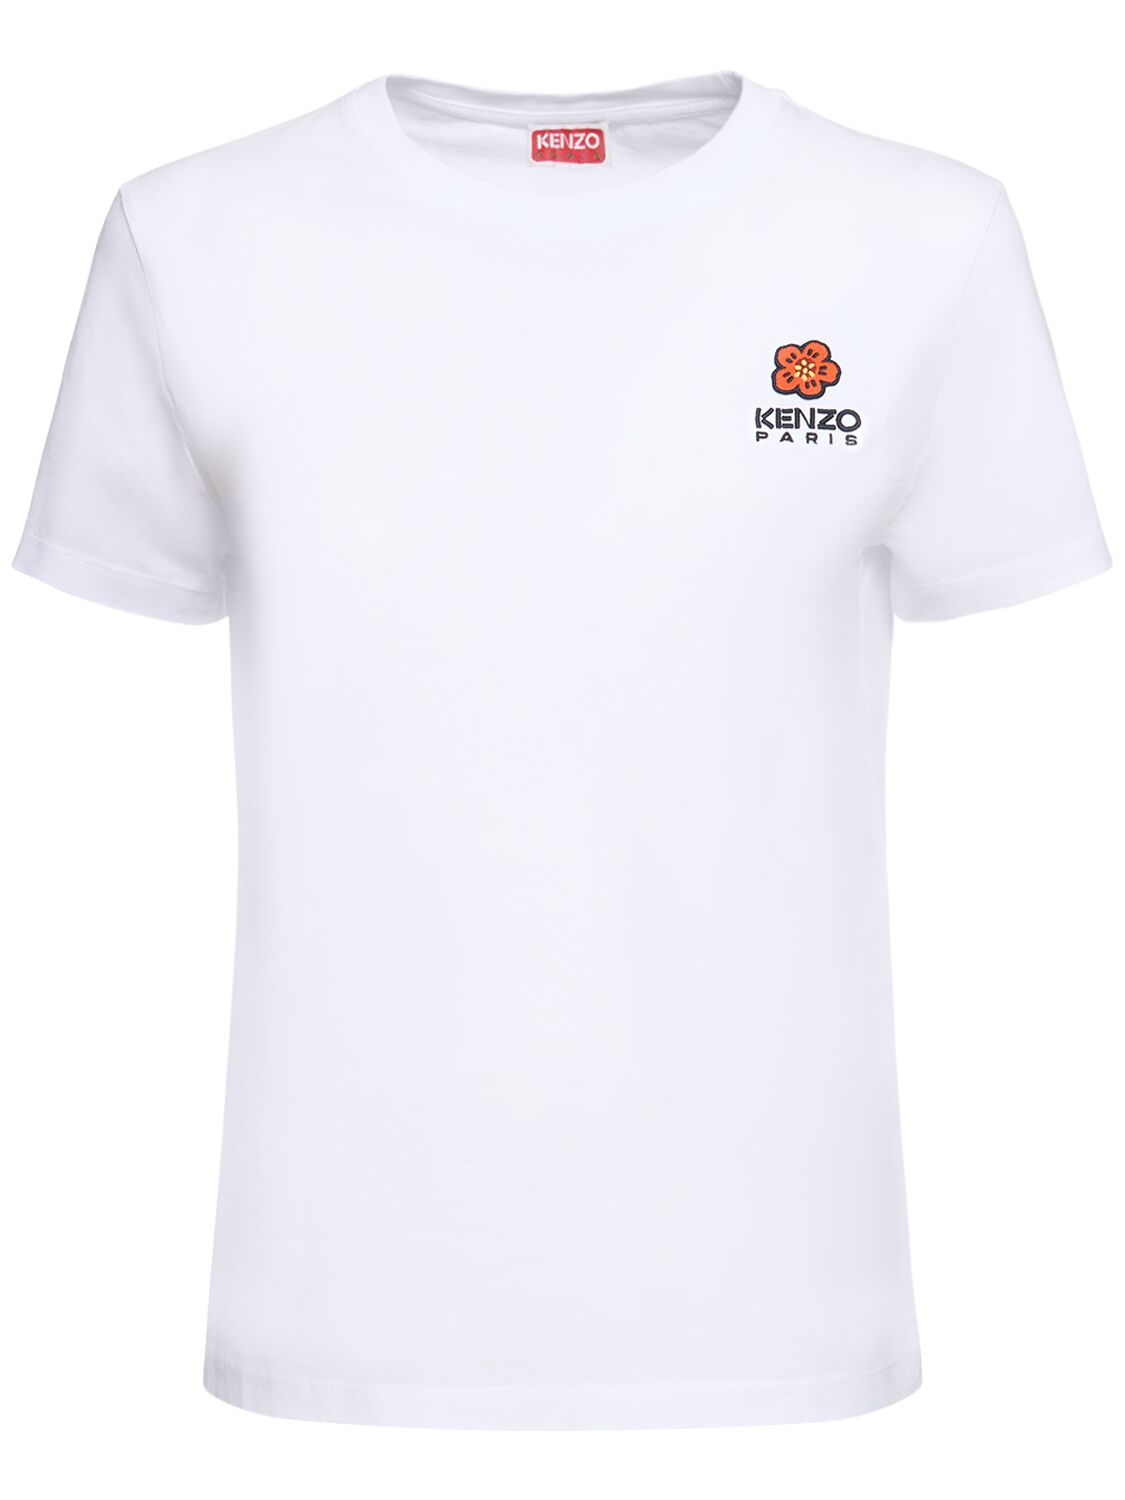 T-shirt Boke Crest In Cotone - KENZO PARIS - Modalova